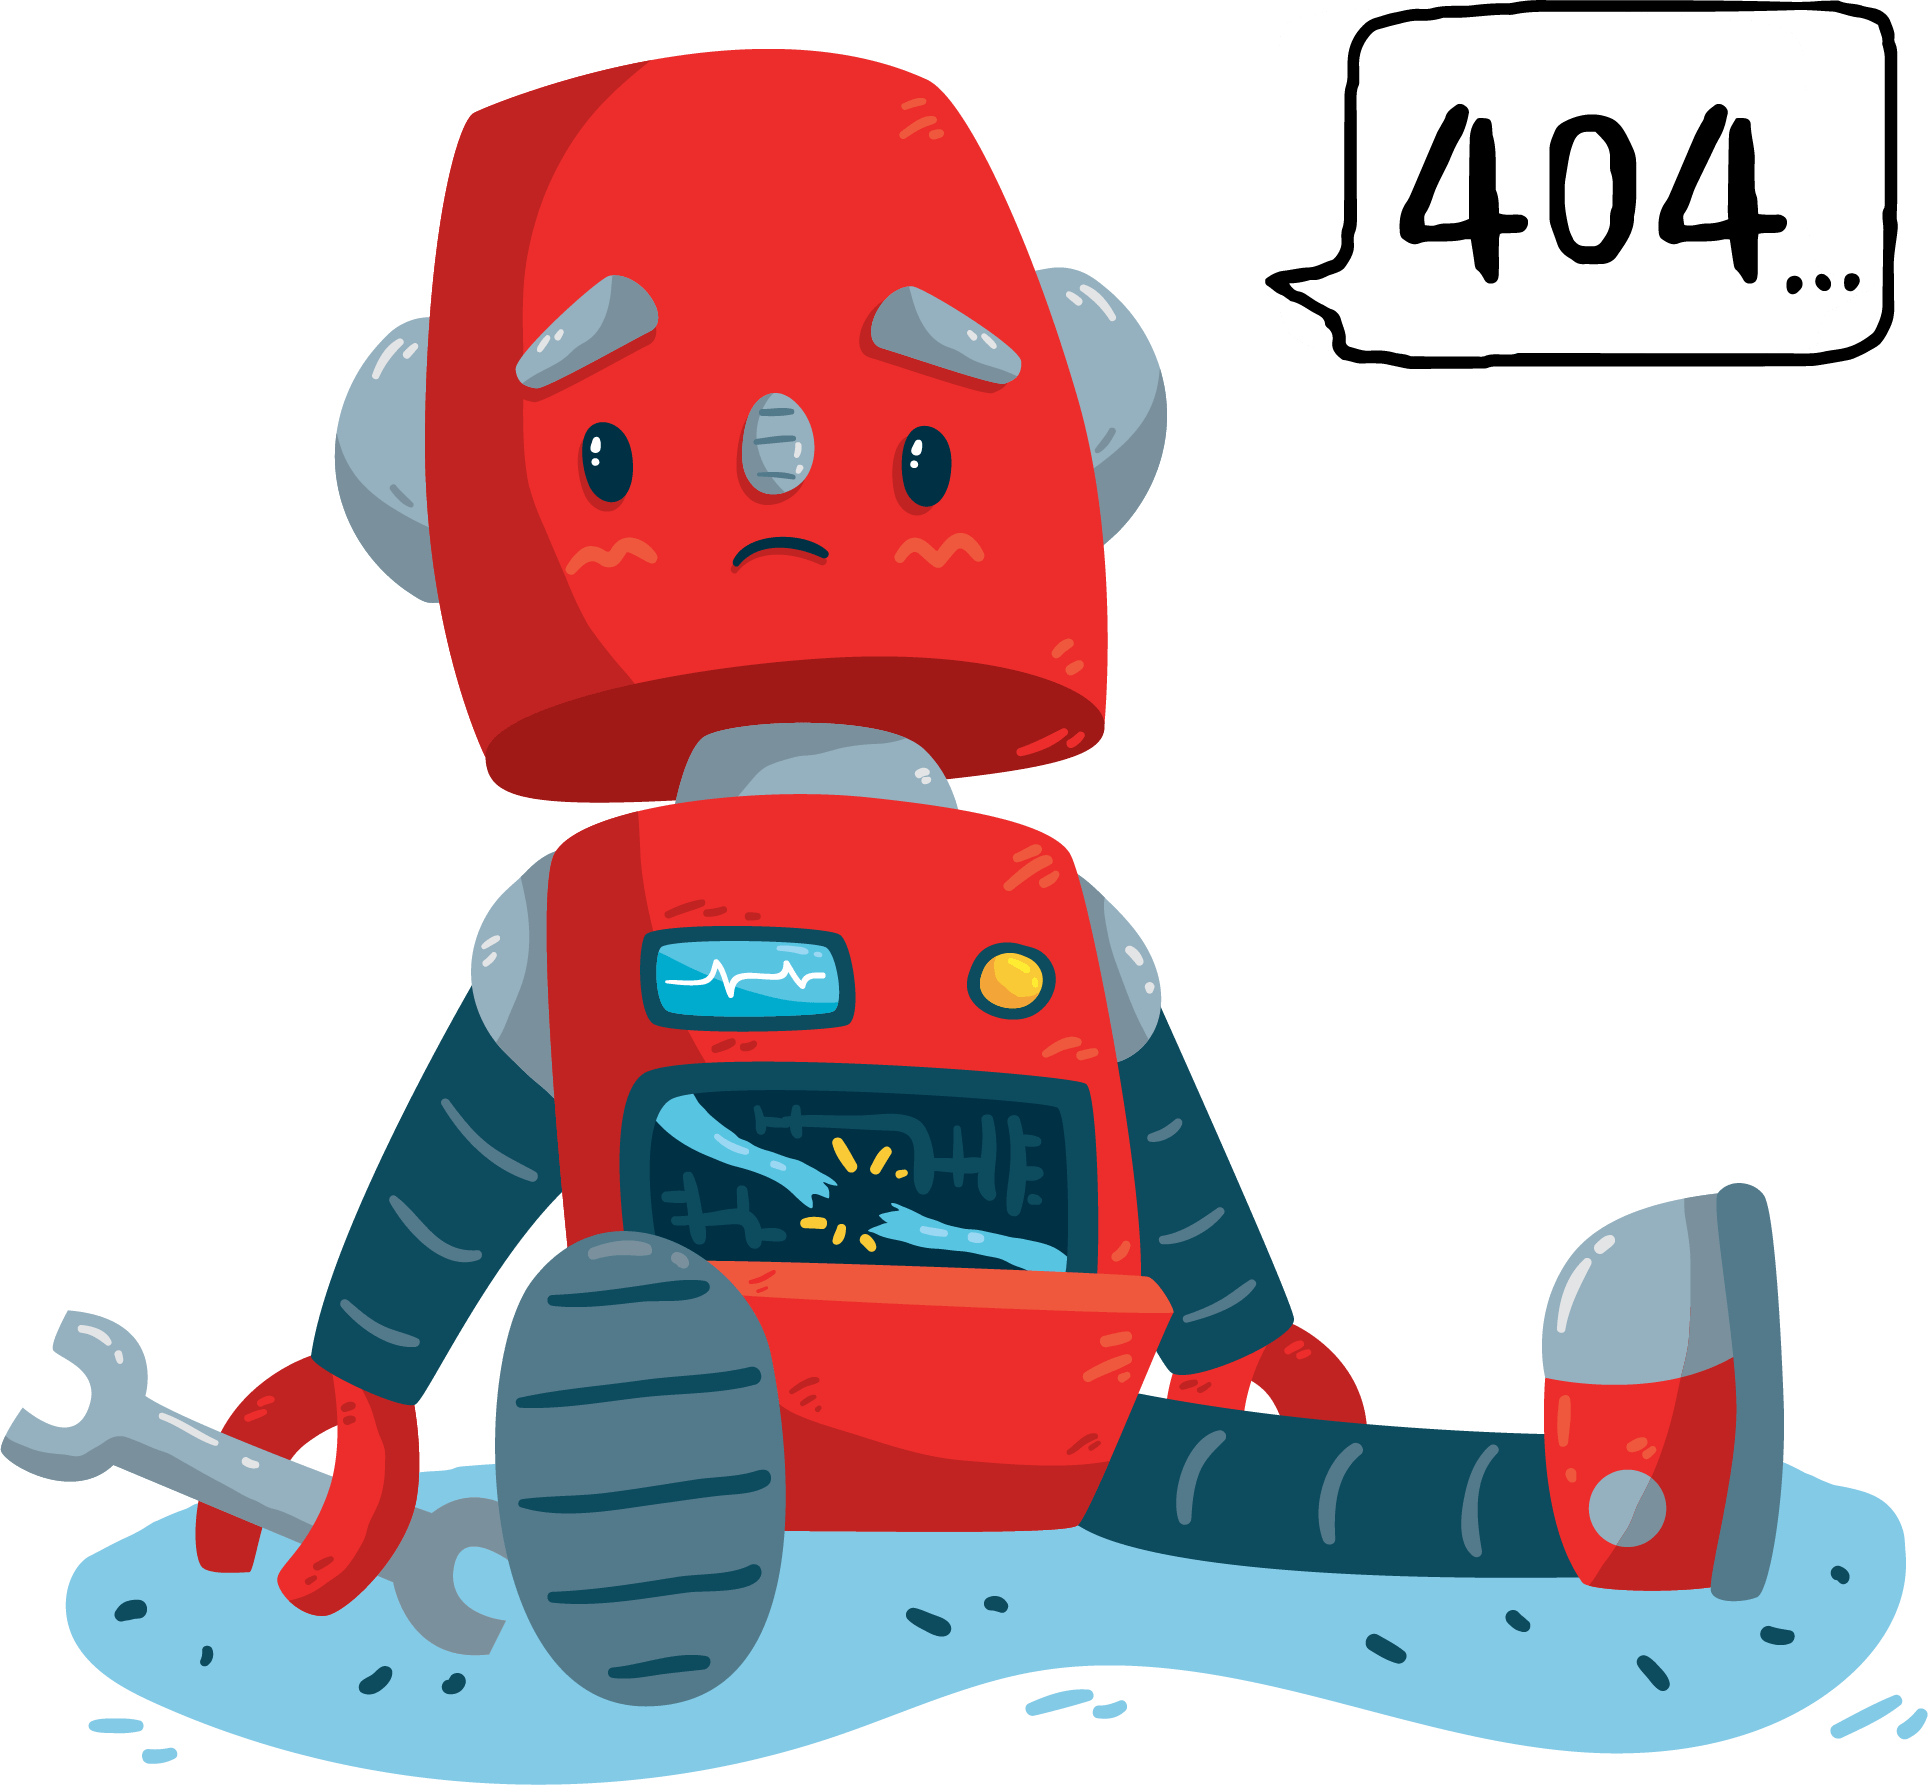 404 - Image